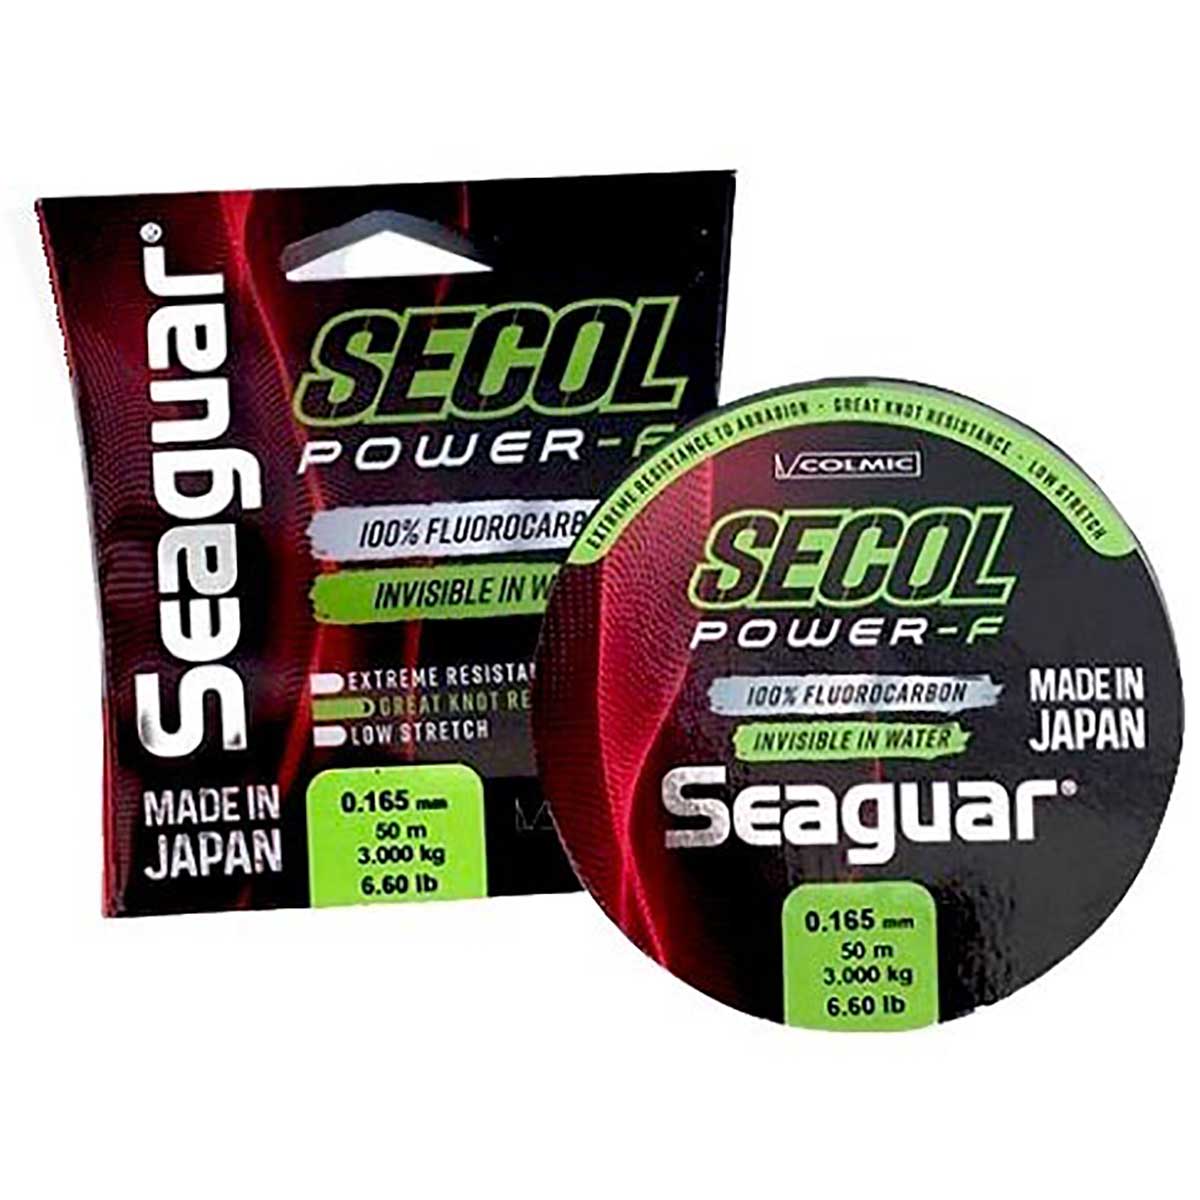 Japon Seaguar markasının italyan Colmic için ürettiği fluorocarbon misina serisi